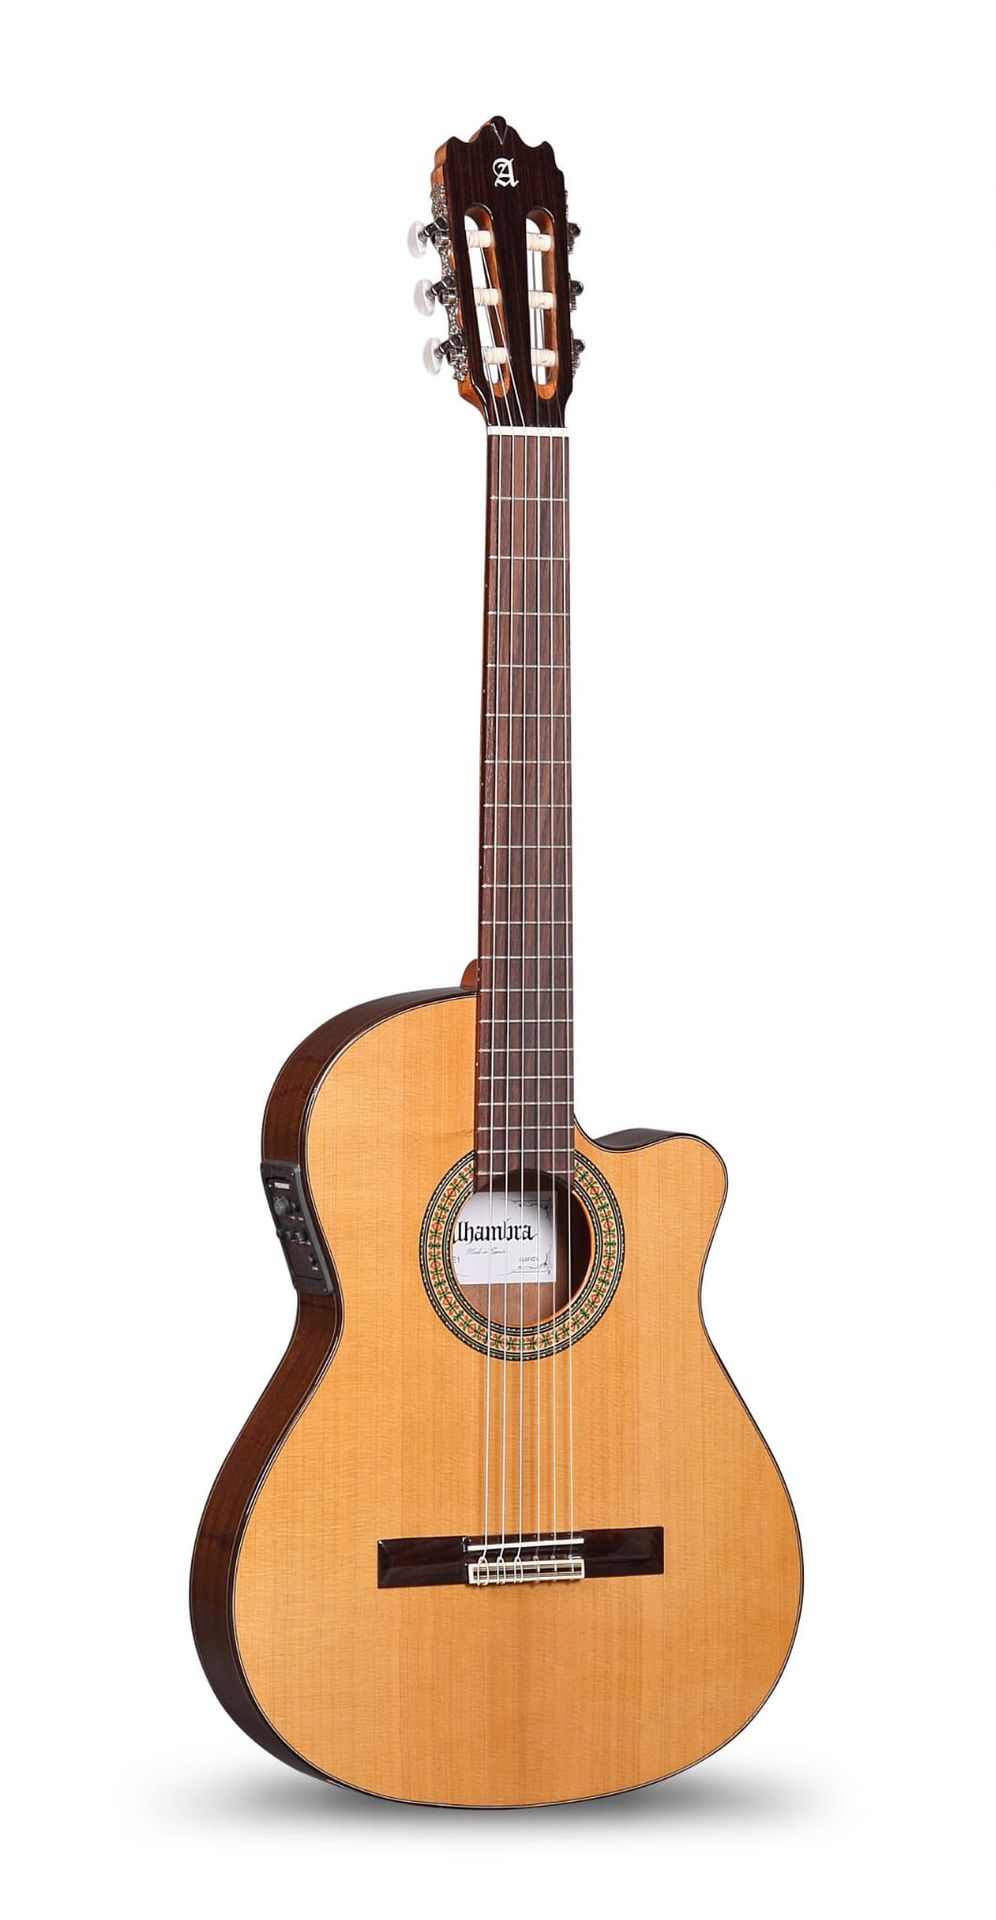 Alhambra 3C CT E1 Gitara pół-akustyczna 4/4 Gratis Prezent od Kup Instrument!